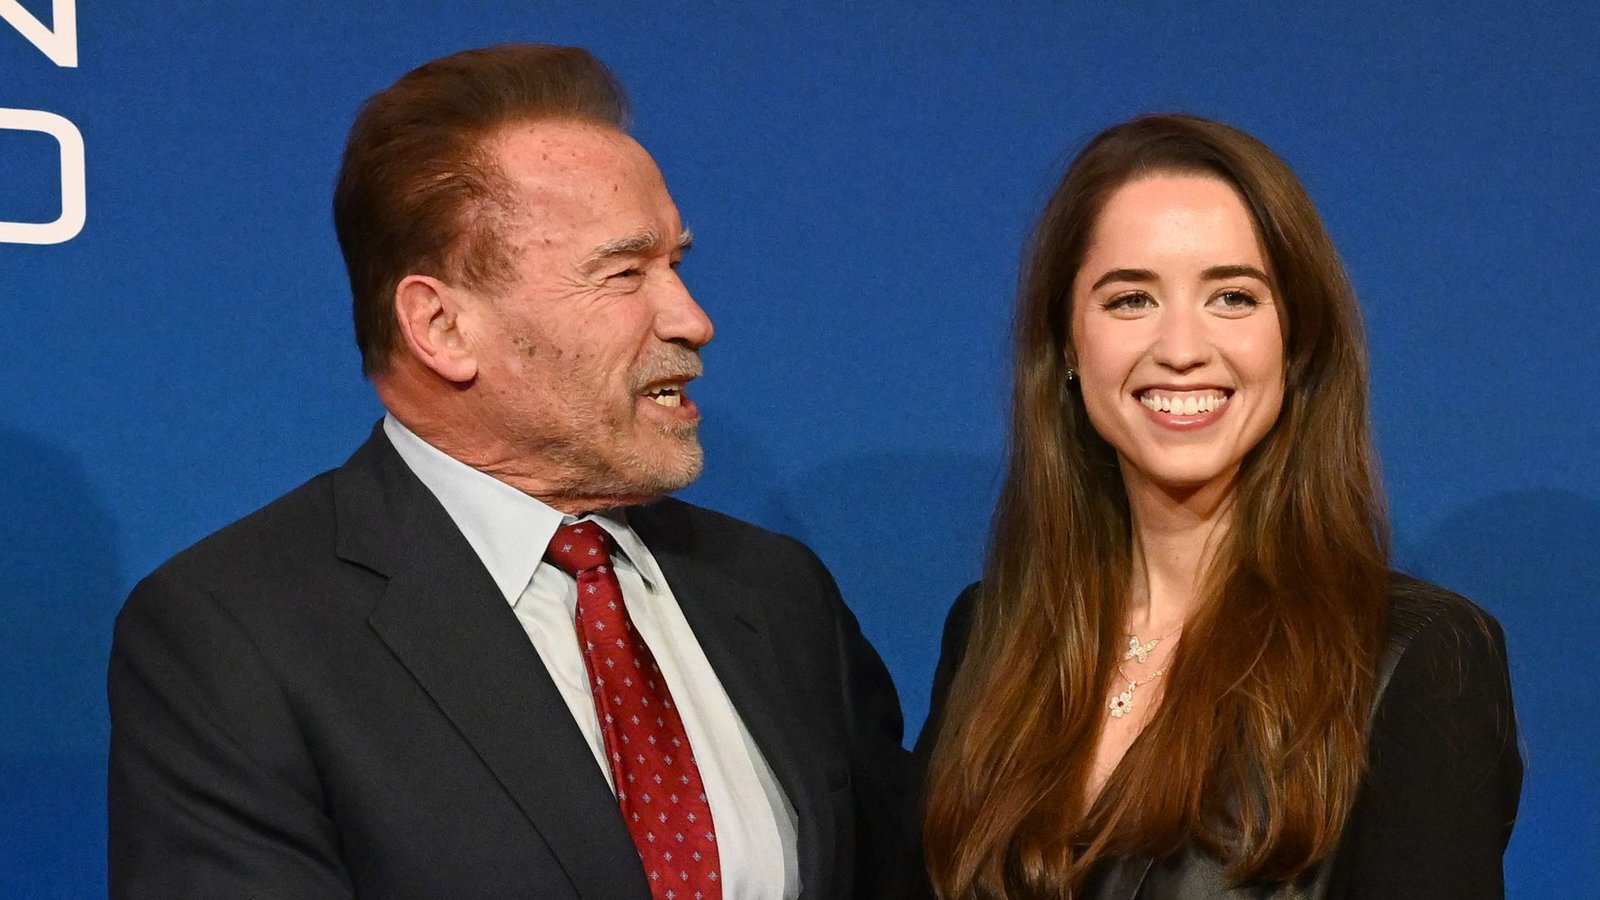 Arnold Schwarzenegger, Schauspieler und Bodybuilder aus Österreich sowie ehemaliger Gouverneur von Kalifornien, und seine Tochter Christina im Biohotel Stanglwirt.Foto: Barbara Gindl/APA/dpa